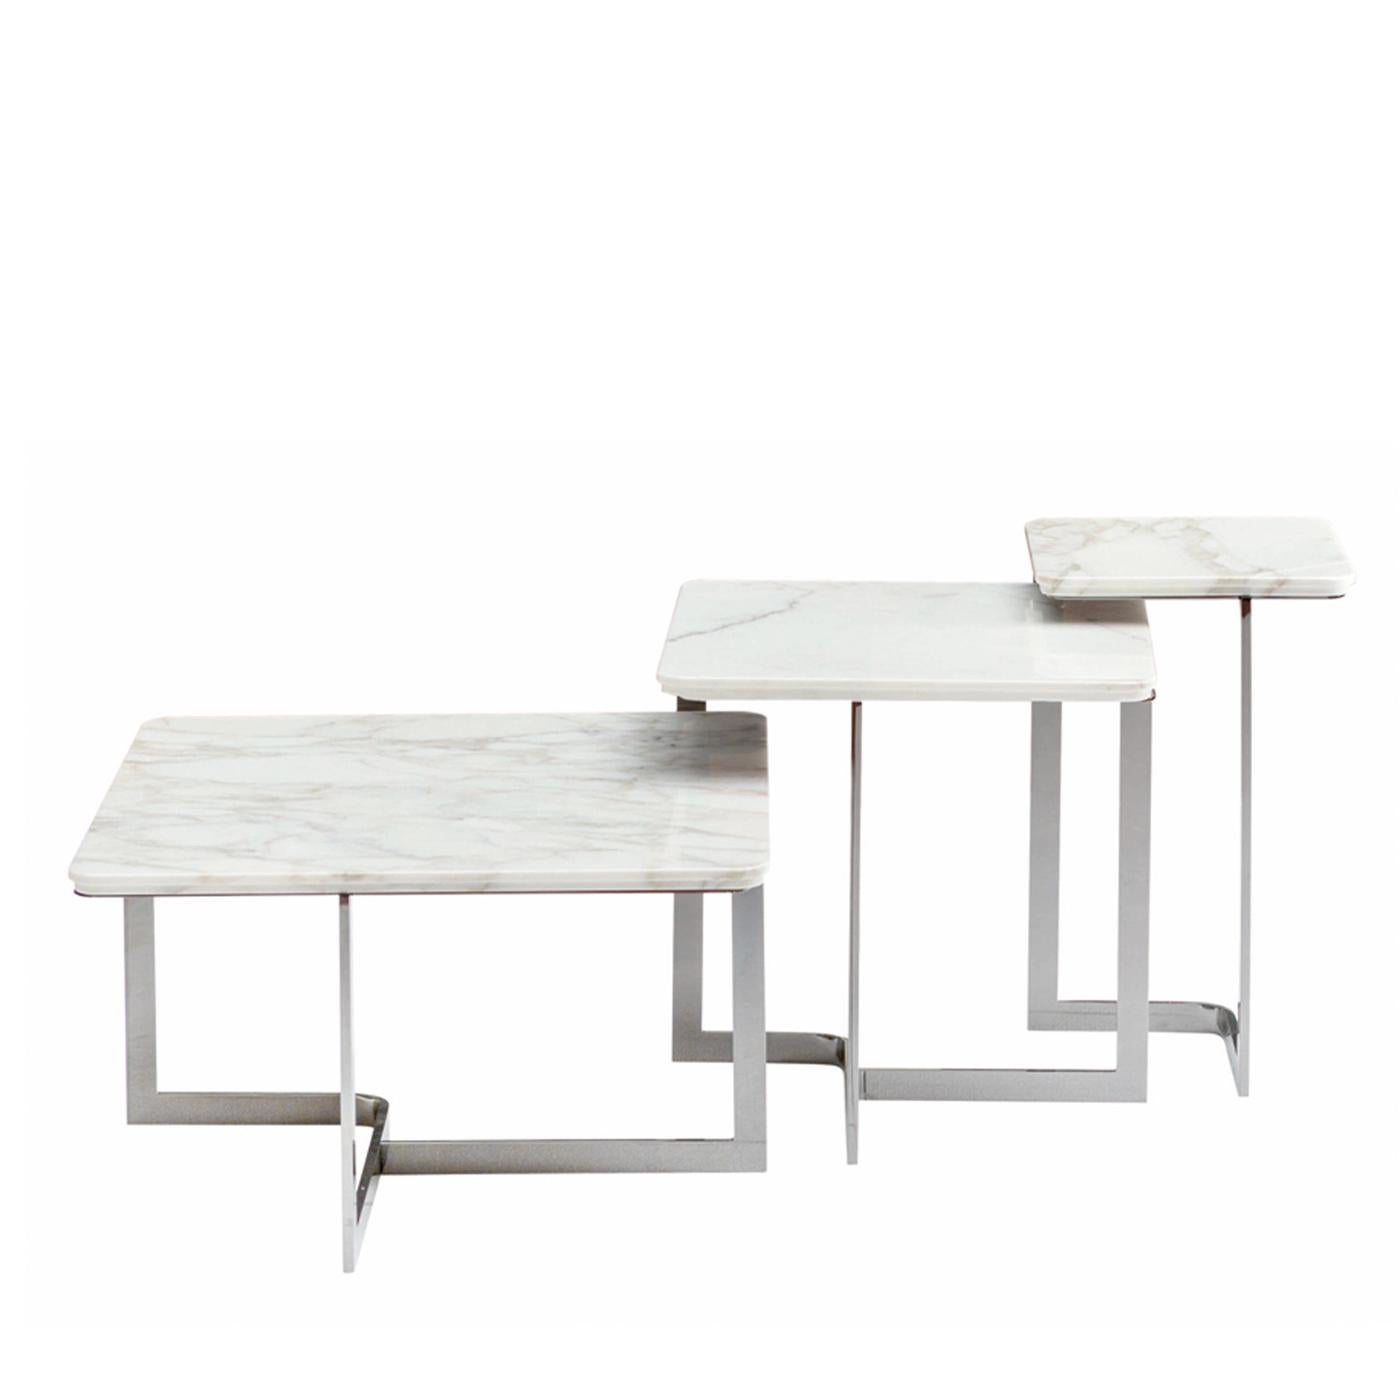 Avec un design immaculé, les tables basses et d'appoint Yoshi sont très fonctionnelles et ajoutent du style et de la classe pour compléter tout décor contemporain dans votre espace de vie. Les tables peuvent être utilisées séparément ou être rangées